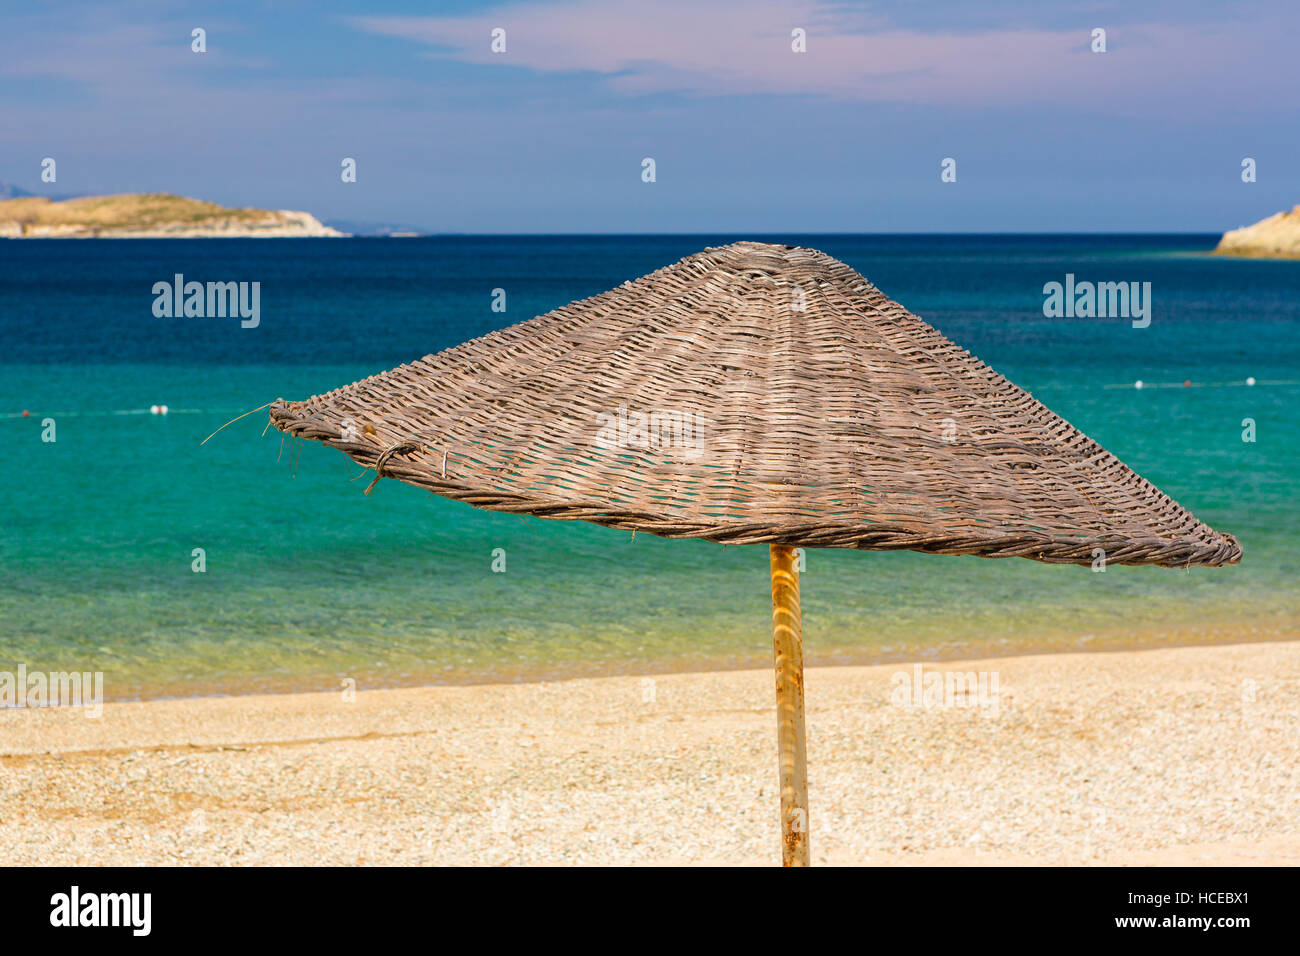 Liege und sonnenschirm am strand mit meereshintergrund gener